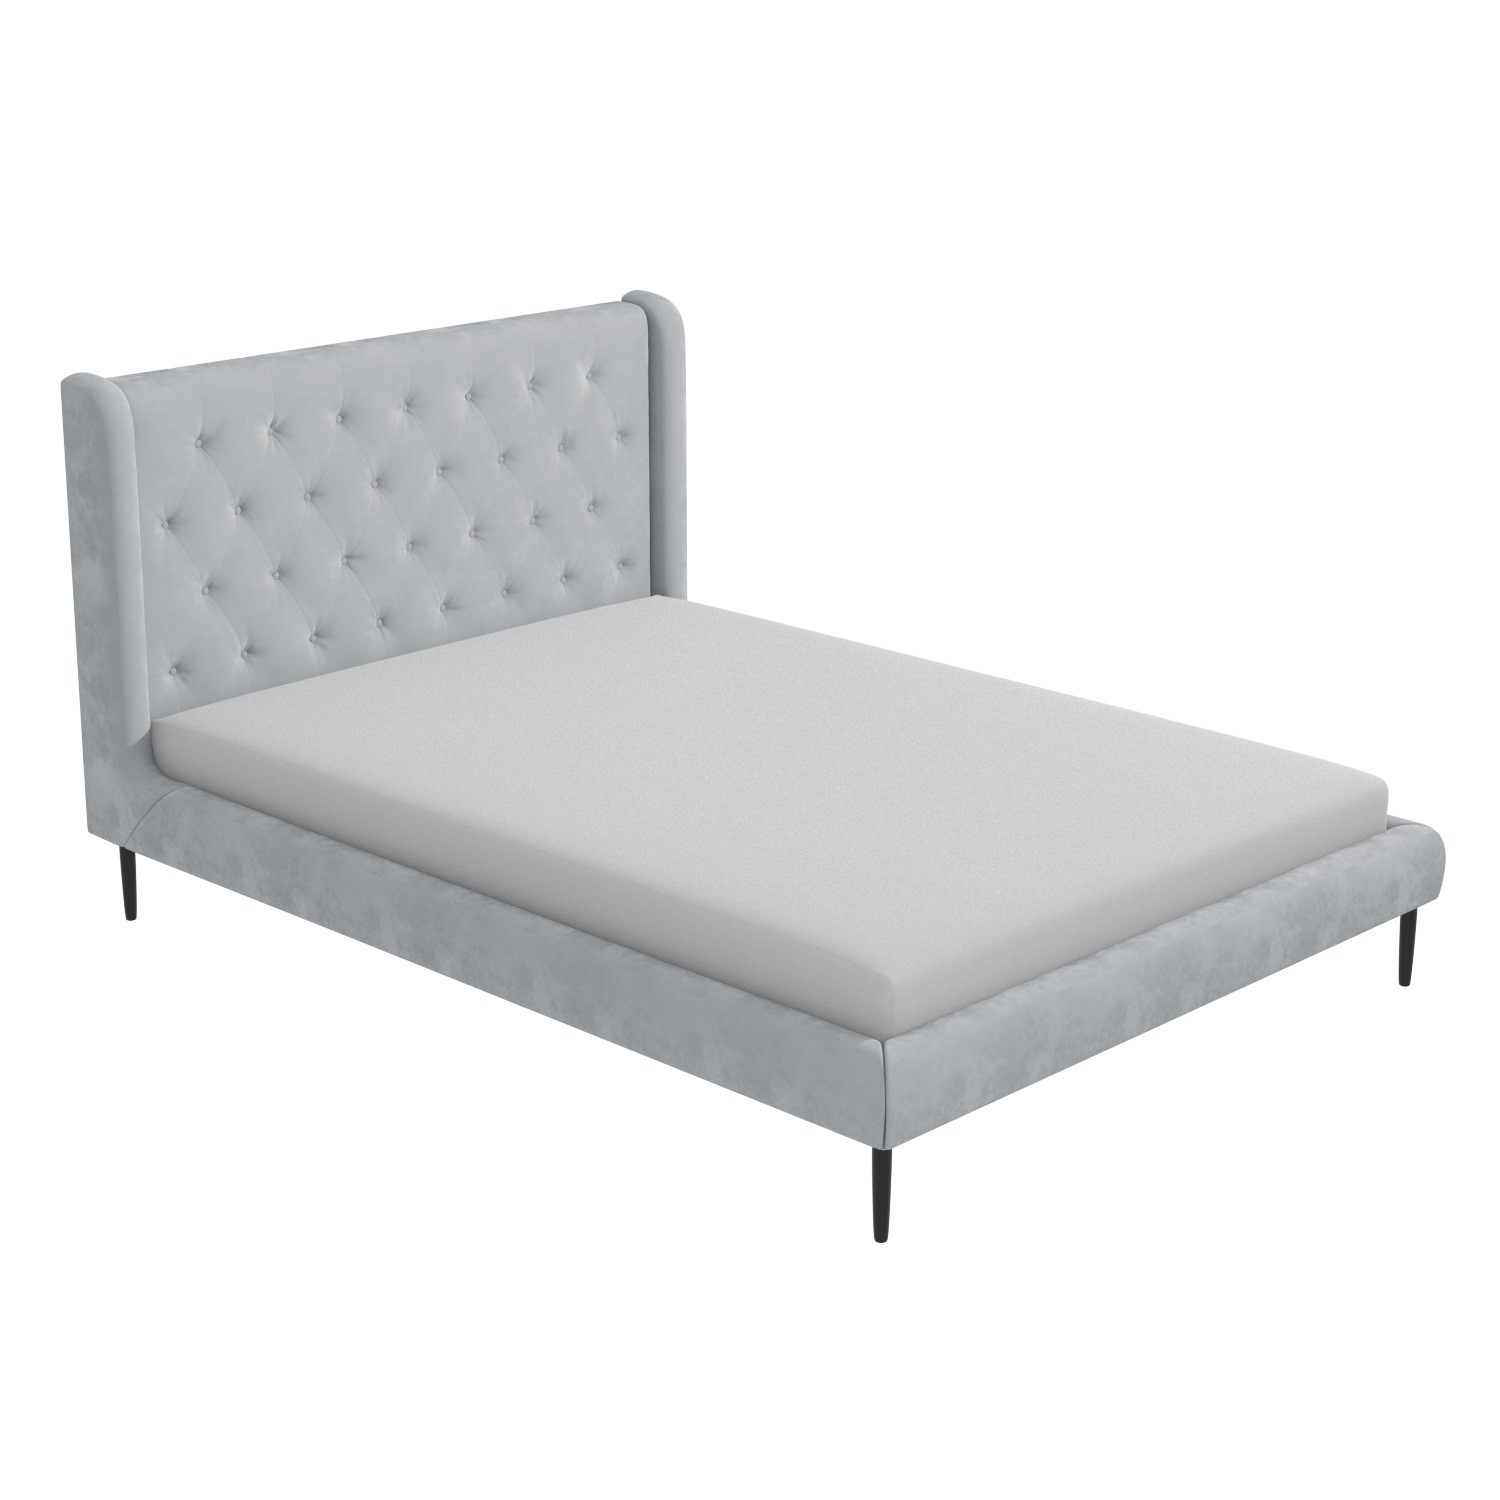 Light Grey Velvet King Size Bed Frame, How Much Does A King Size Bed Frame Weight